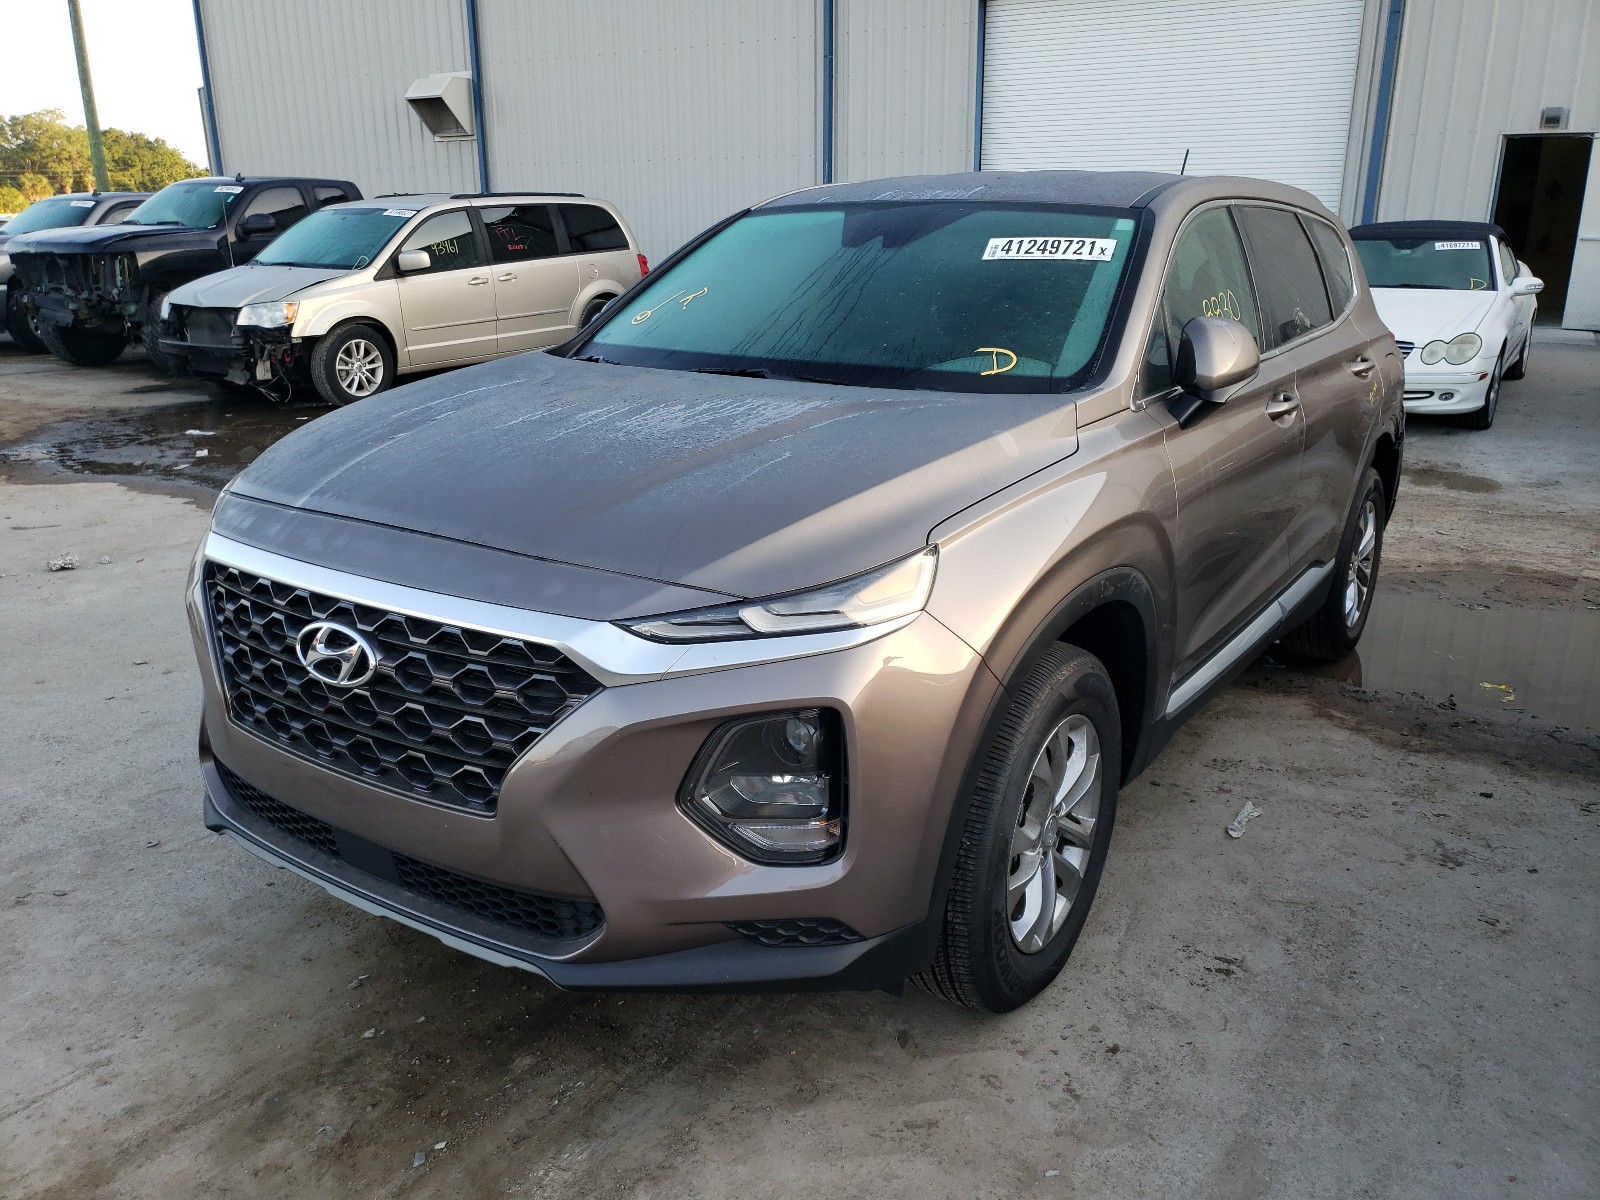 Hyundai Santa fe s 2019